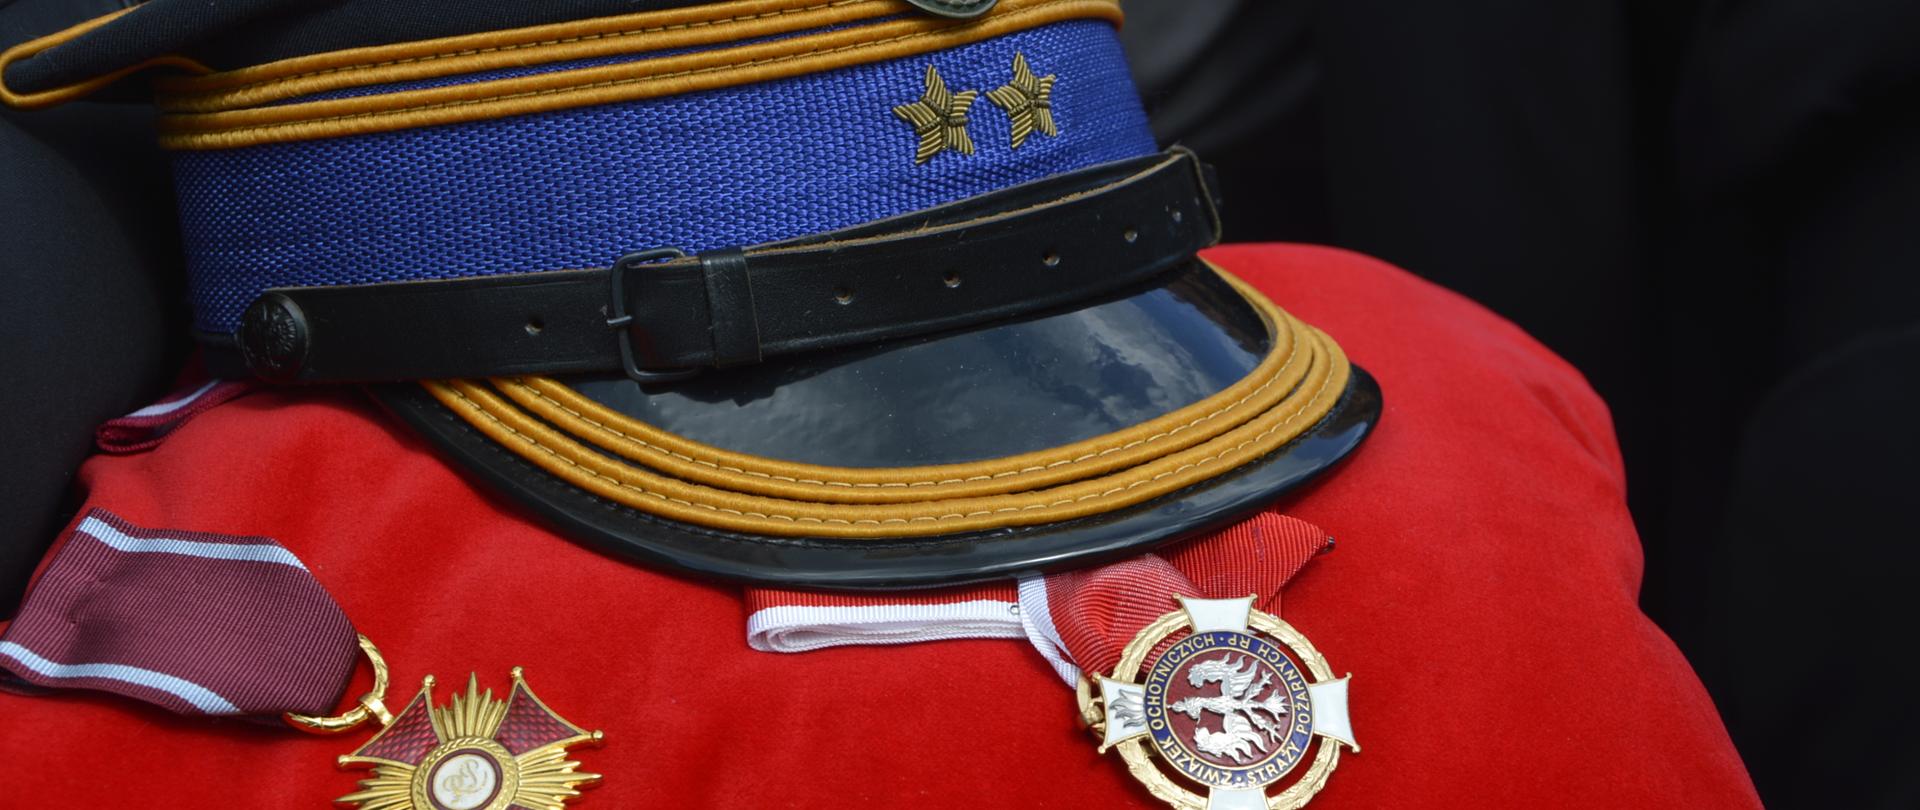 Na zdjęciu widać rogatywkę PSP brygadiera oraz dwa medale które leżą na czerwonej poduszce. 